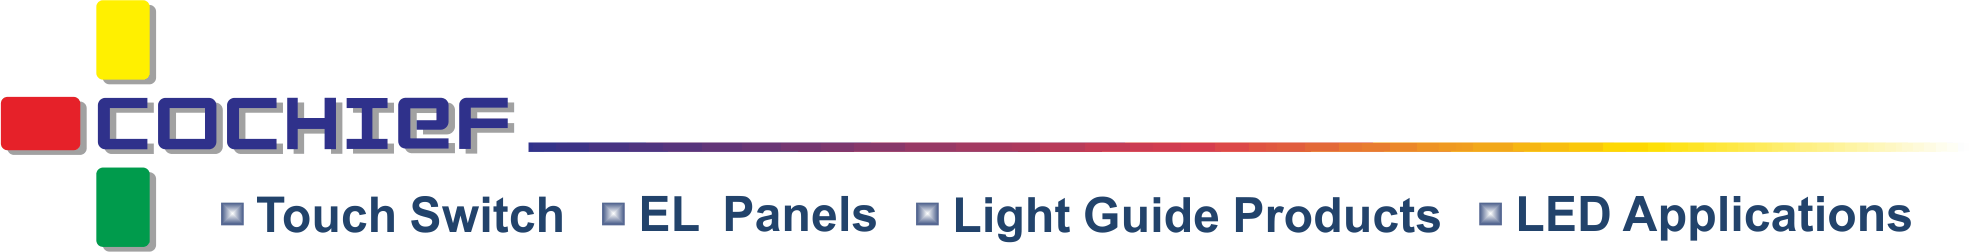 皓智企業股份有限公司 - 静電容量式スマートライト効果タッチモジュール、薄型タッチフィルム、コールドライト、ライトガイドの開発、設計、製造。